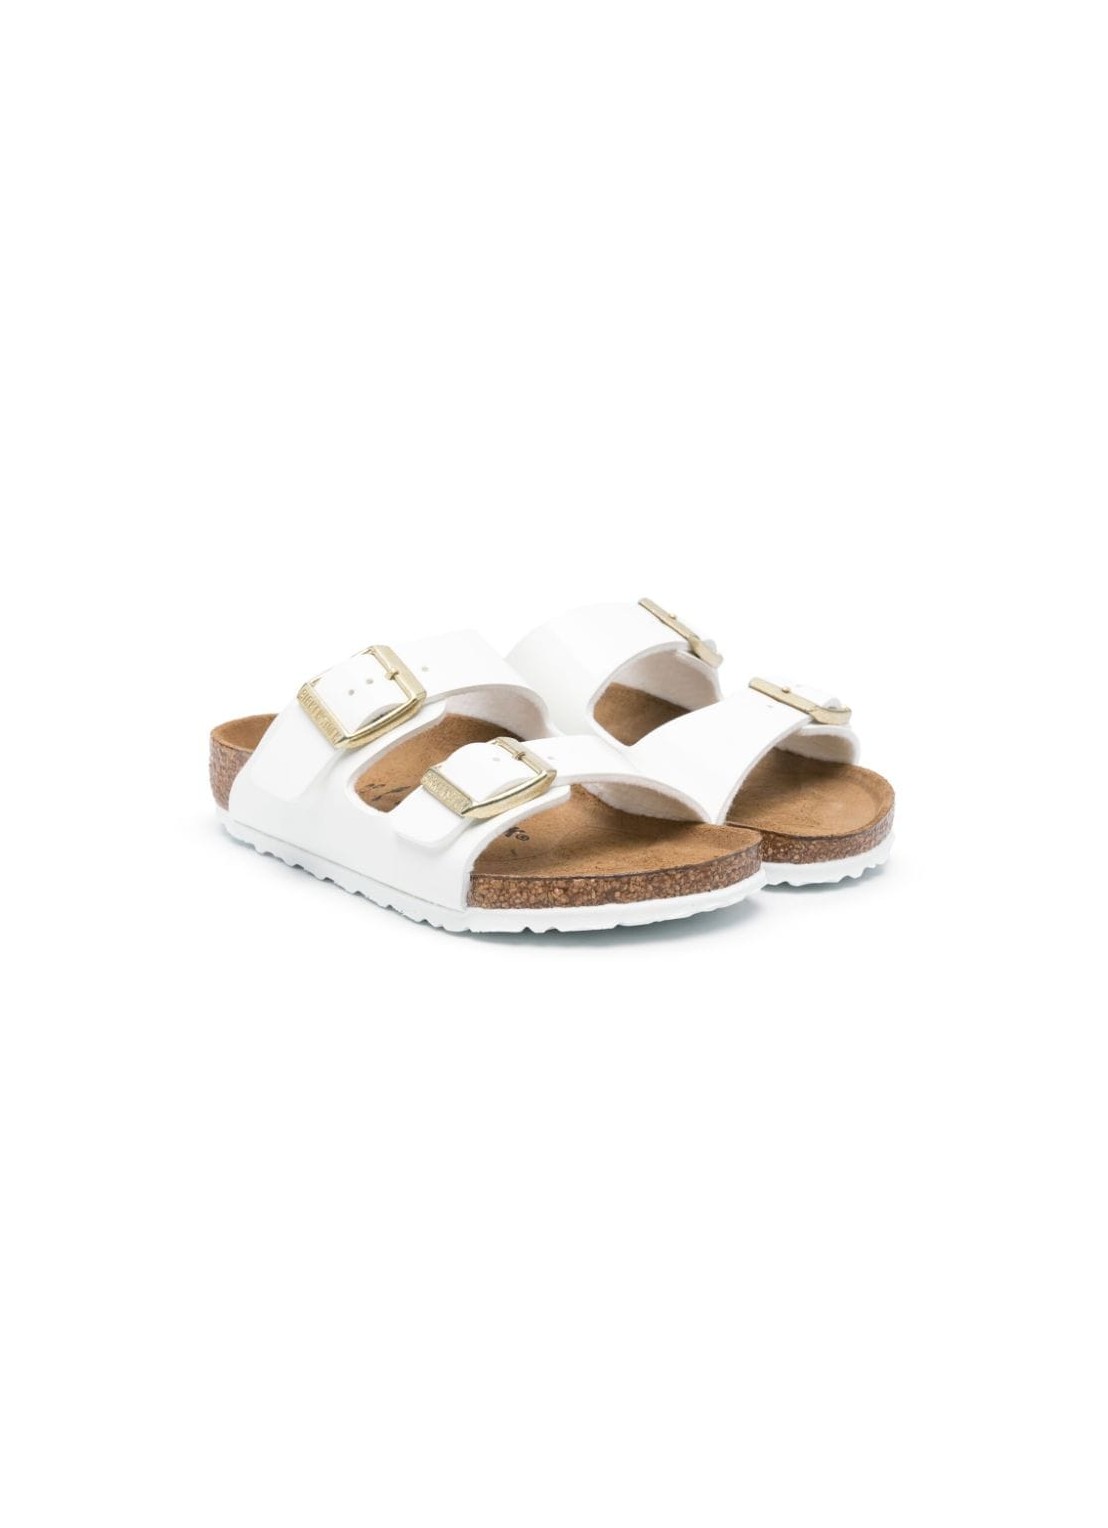 Sandalia birkenstock sandal man arizona kids bf 1027150 patent white talla 32
 